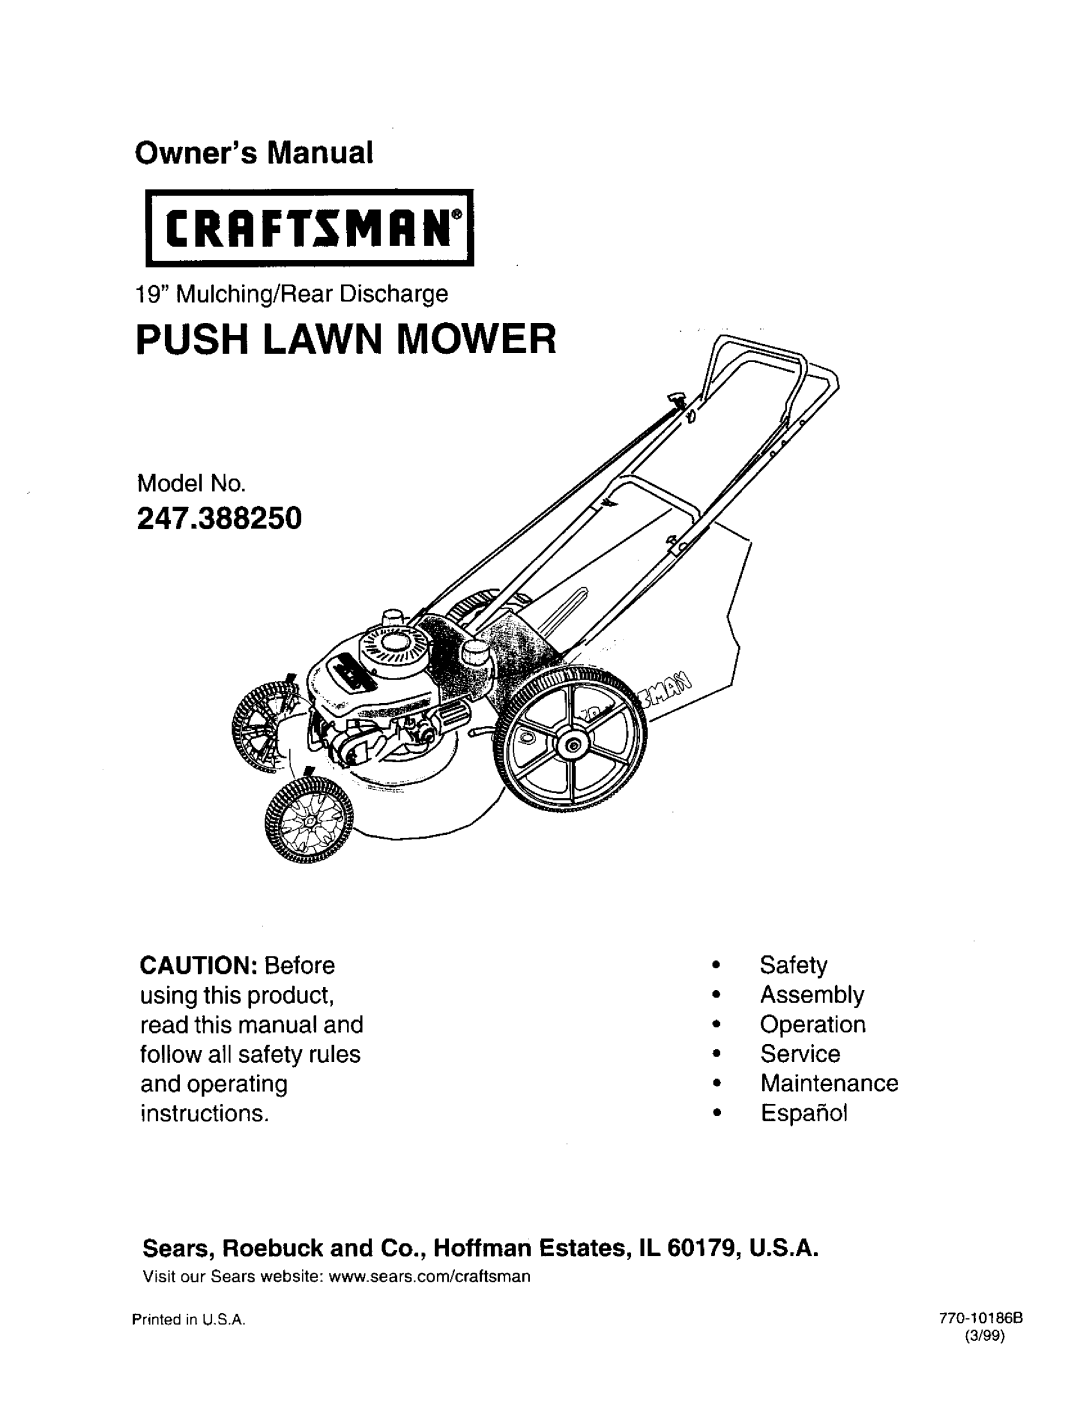 Craftsman 247.388250 owner manual Push Lawn Mower, Owners Manual 